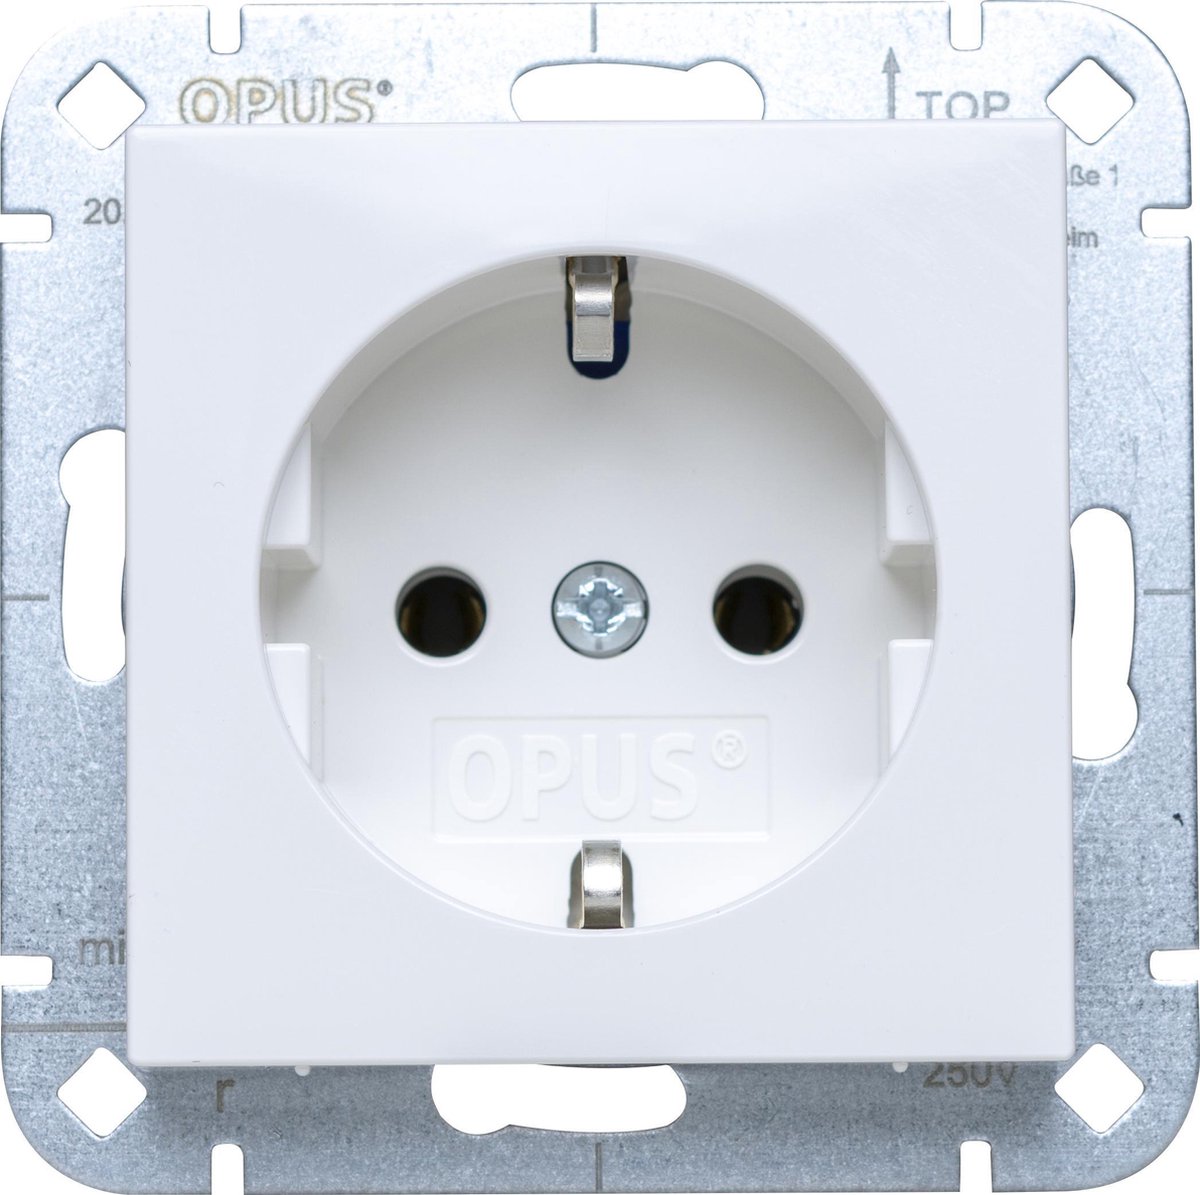 OPUS 55 1-voudig wandcontactdoos | stopcontact geaard PREMIUM glanzend wit - 50 stuks verpakking